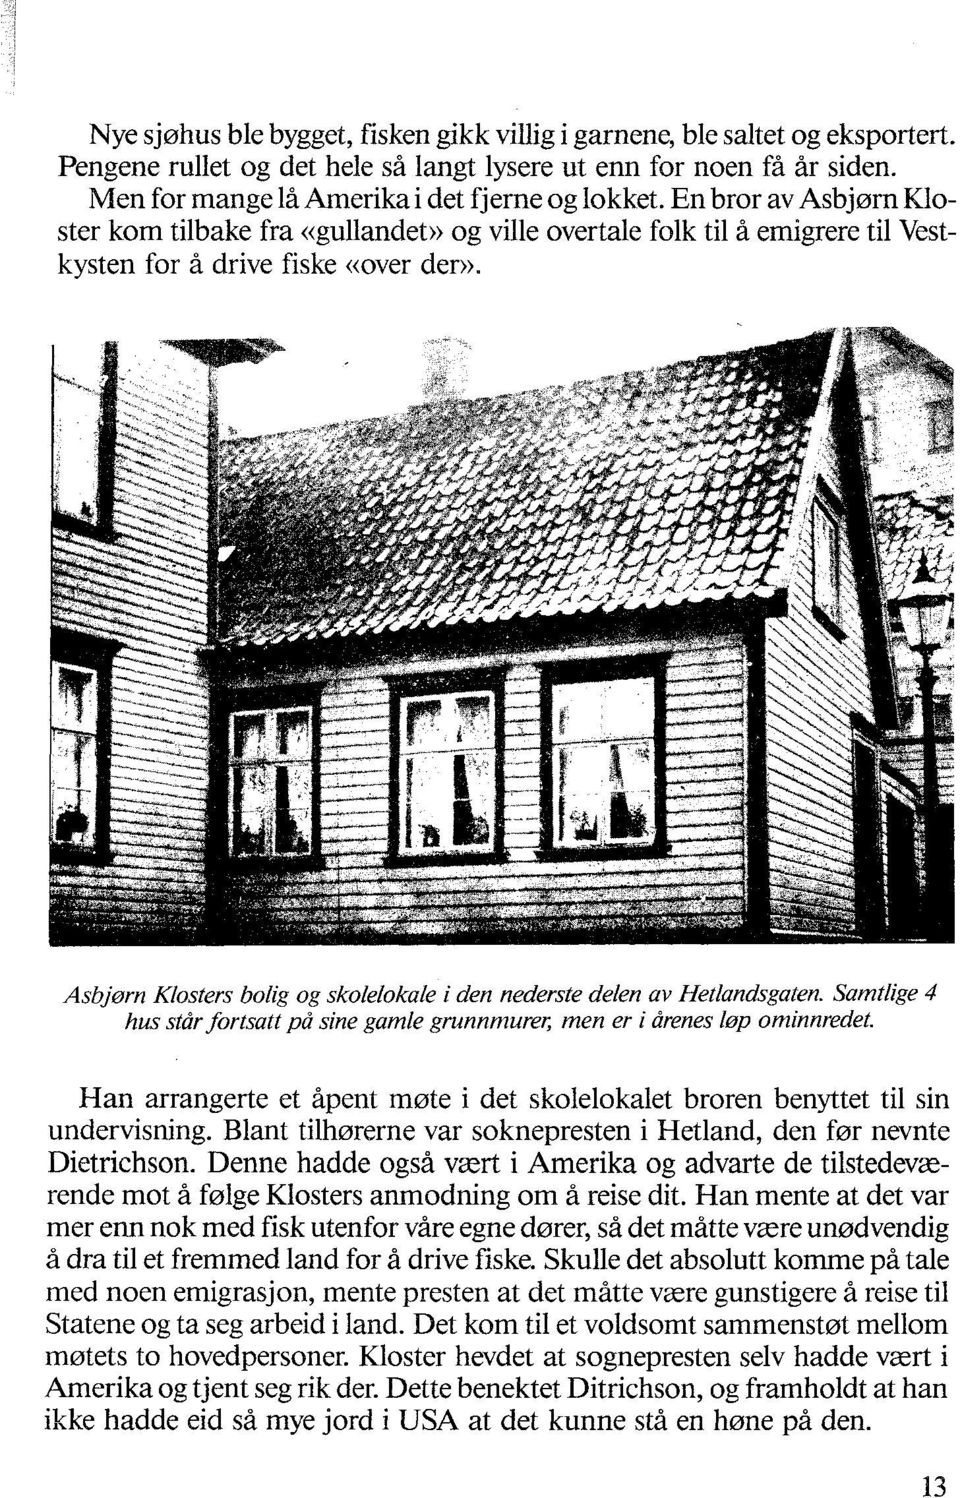 Asbjørn Klosters bolig og skolelokale i den nederste delen av Hetlandsgaten. Samtlige 4 hus står fortsatt på sine gamle grunnmurer, men er i årenes I0p ominnredet.